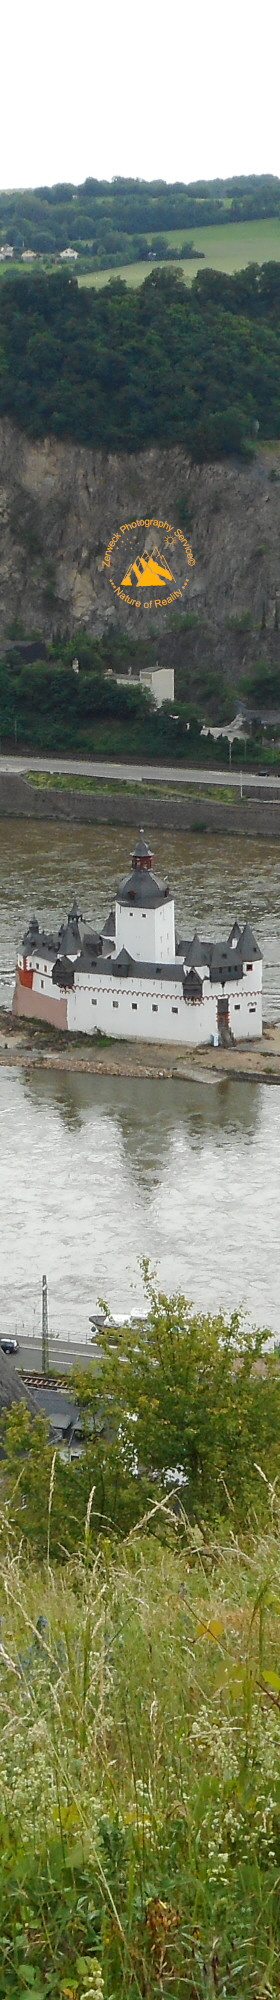 Burg Pfalzgrafenstein Mittelalter Zollburg